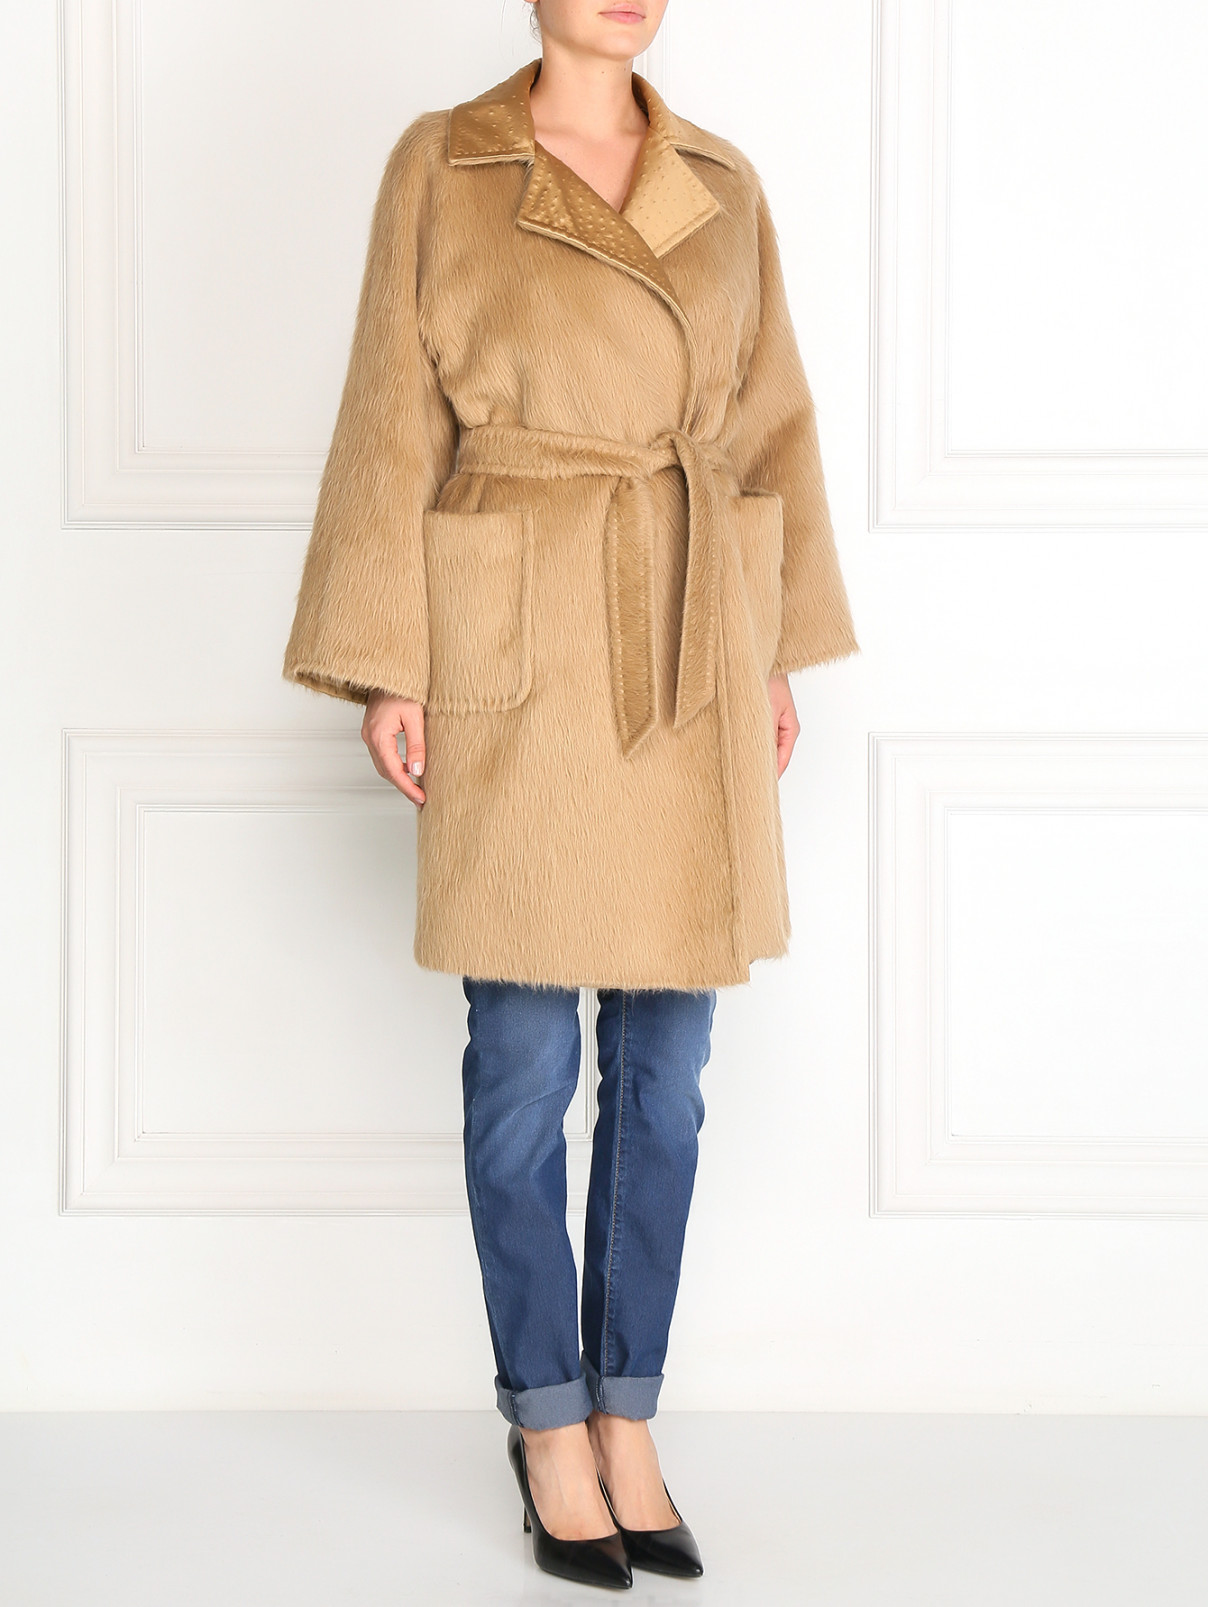 Пальто из шерсти и шелка Max Mara  –  Модель Общий вид  – Цвет:  Бежевый